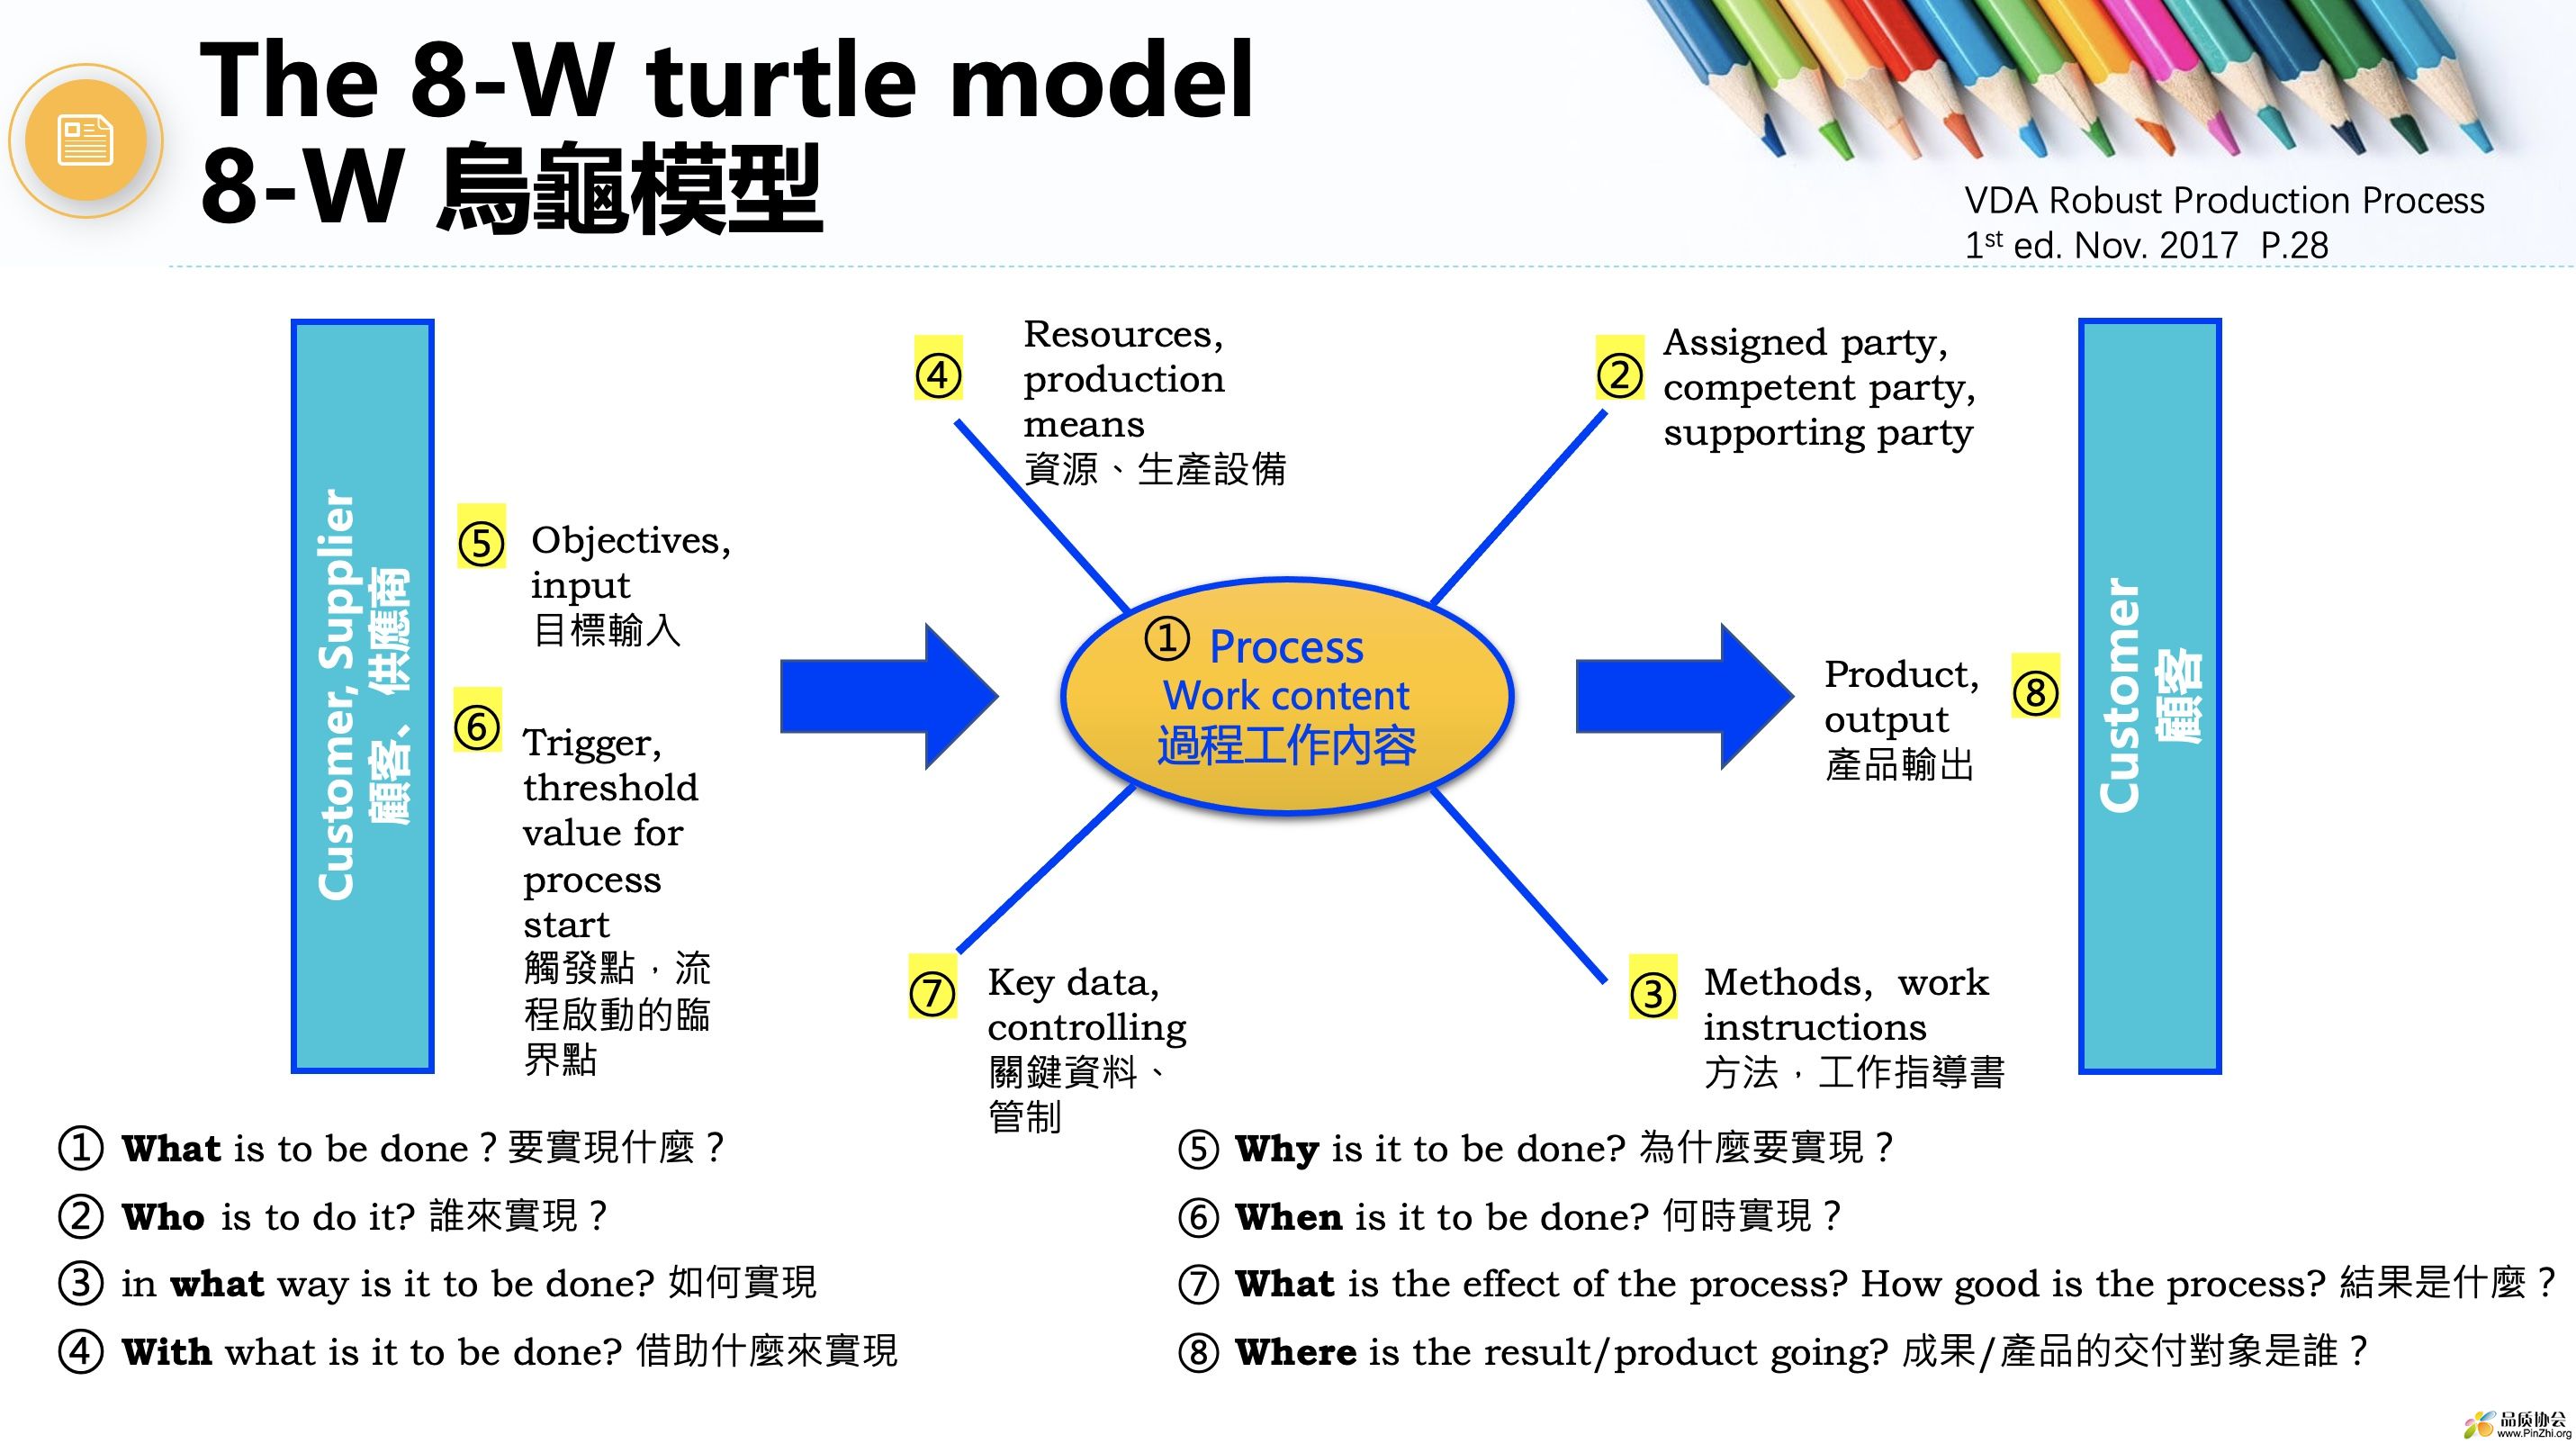 8-W turtle model.jpg